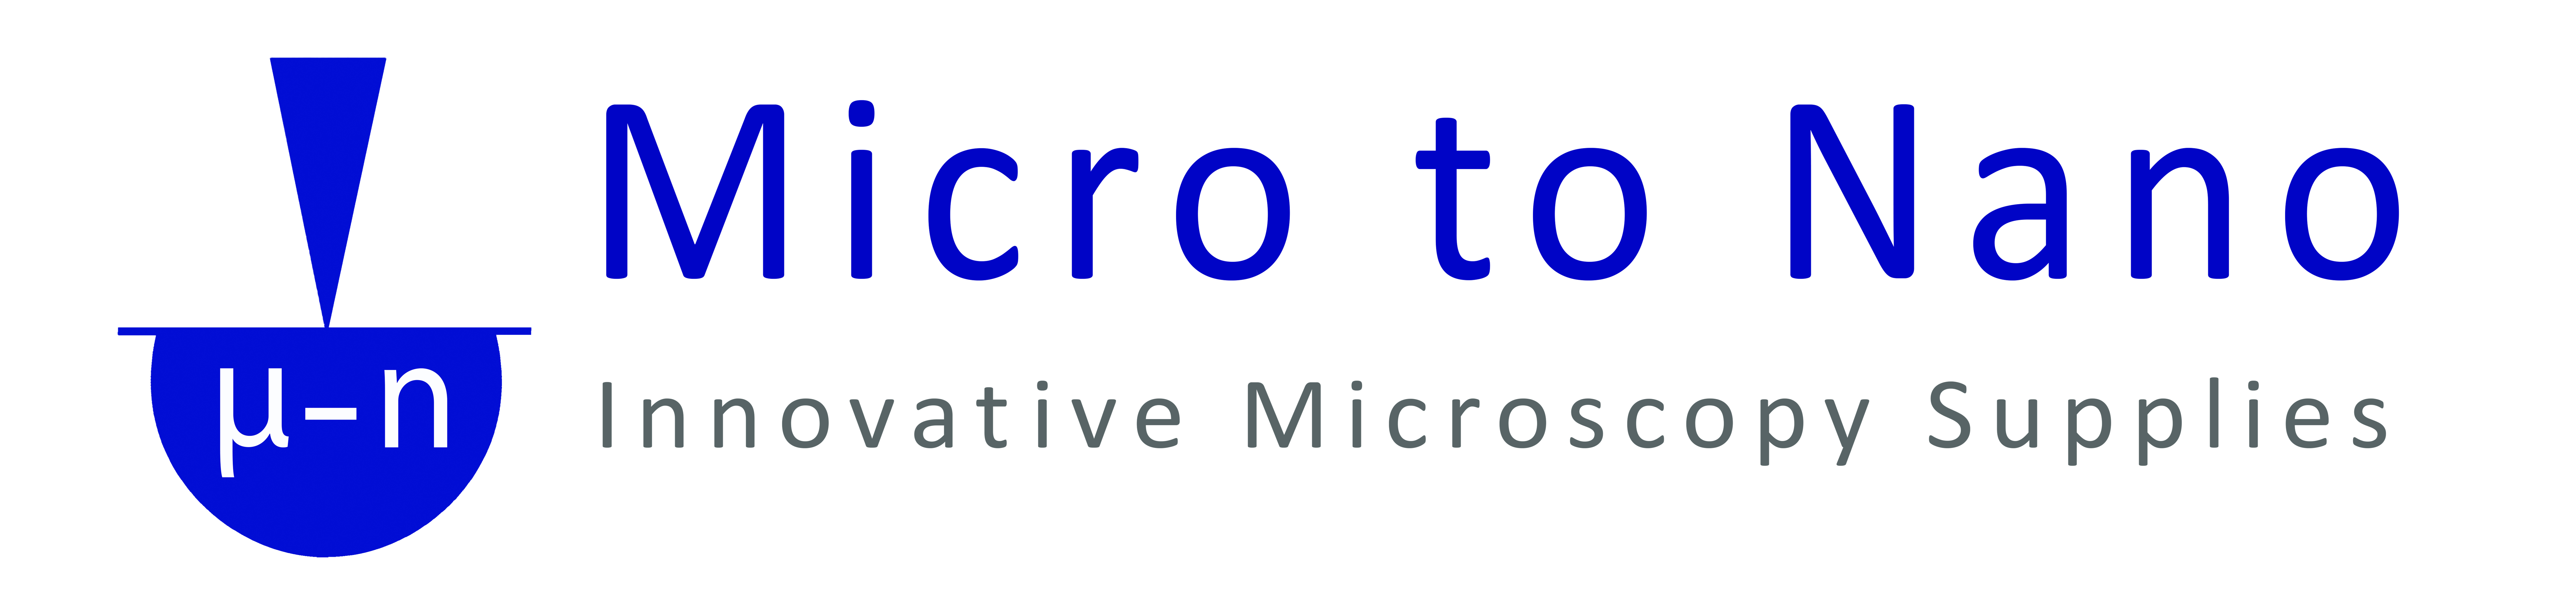 Micro to Nano, Exhibitor at ESREF 2016